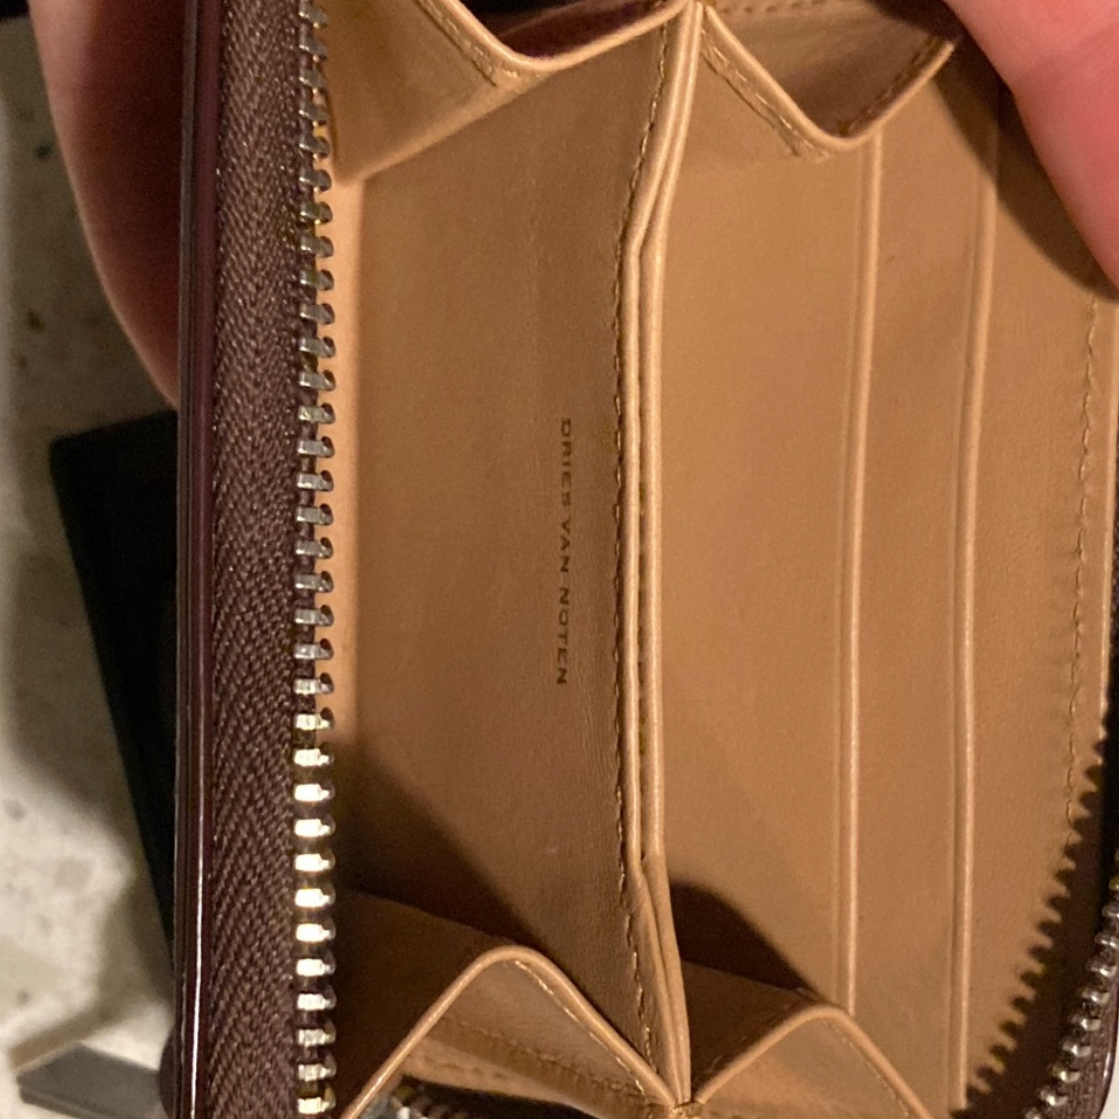 Dries Van Noten Leather Wallet